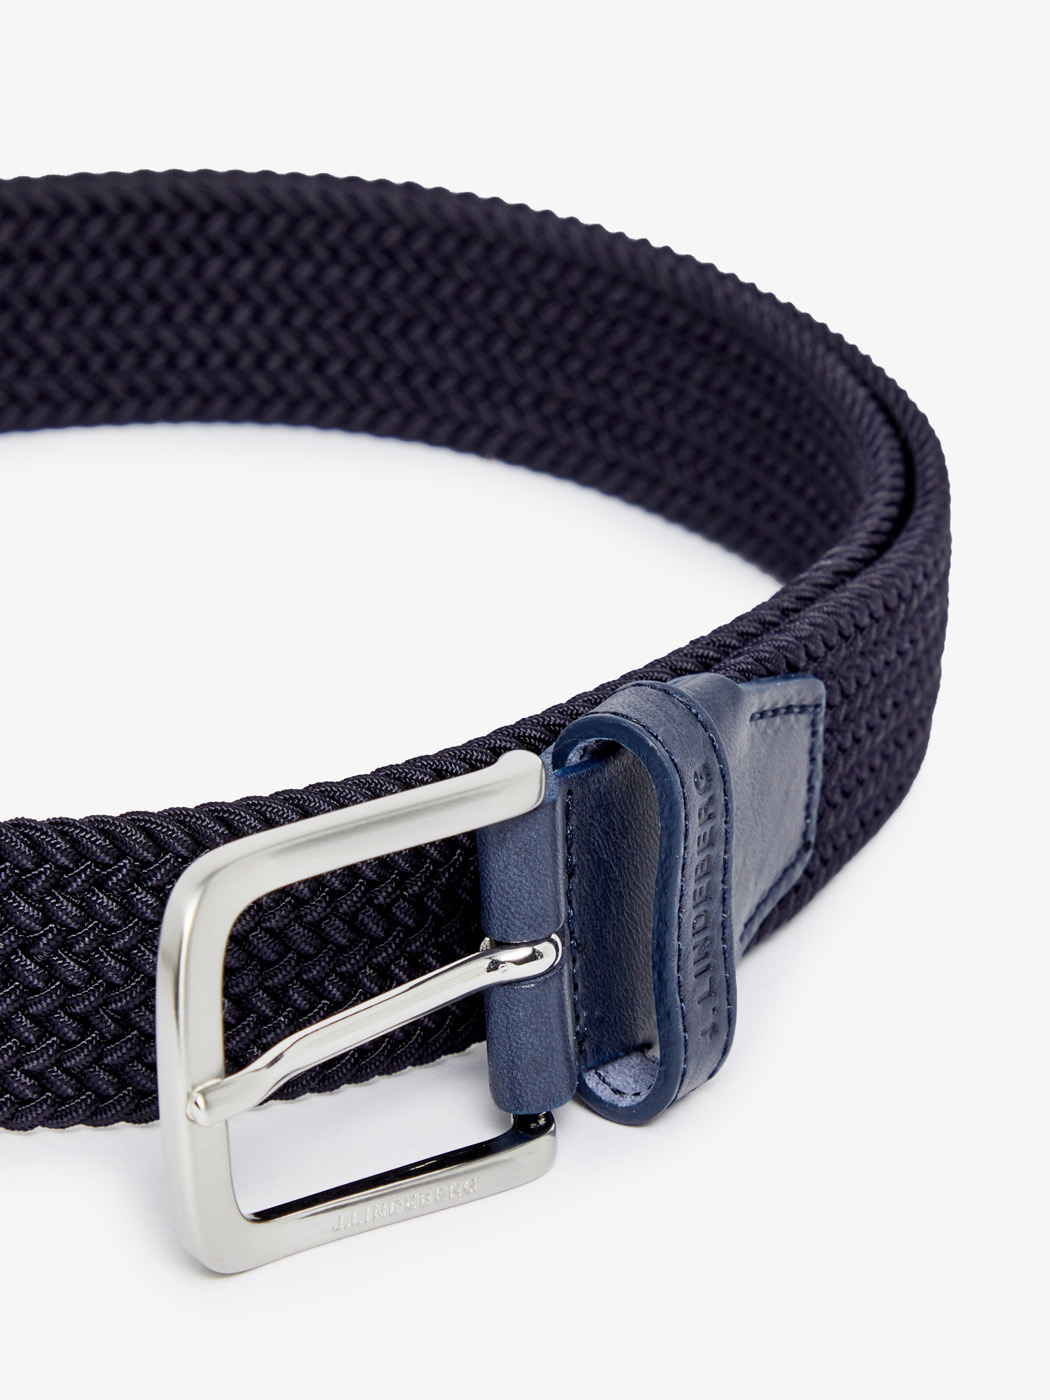 J.Lindeberg Bernhard Braided Elastic Belt - Belts - buy online at Sport ...